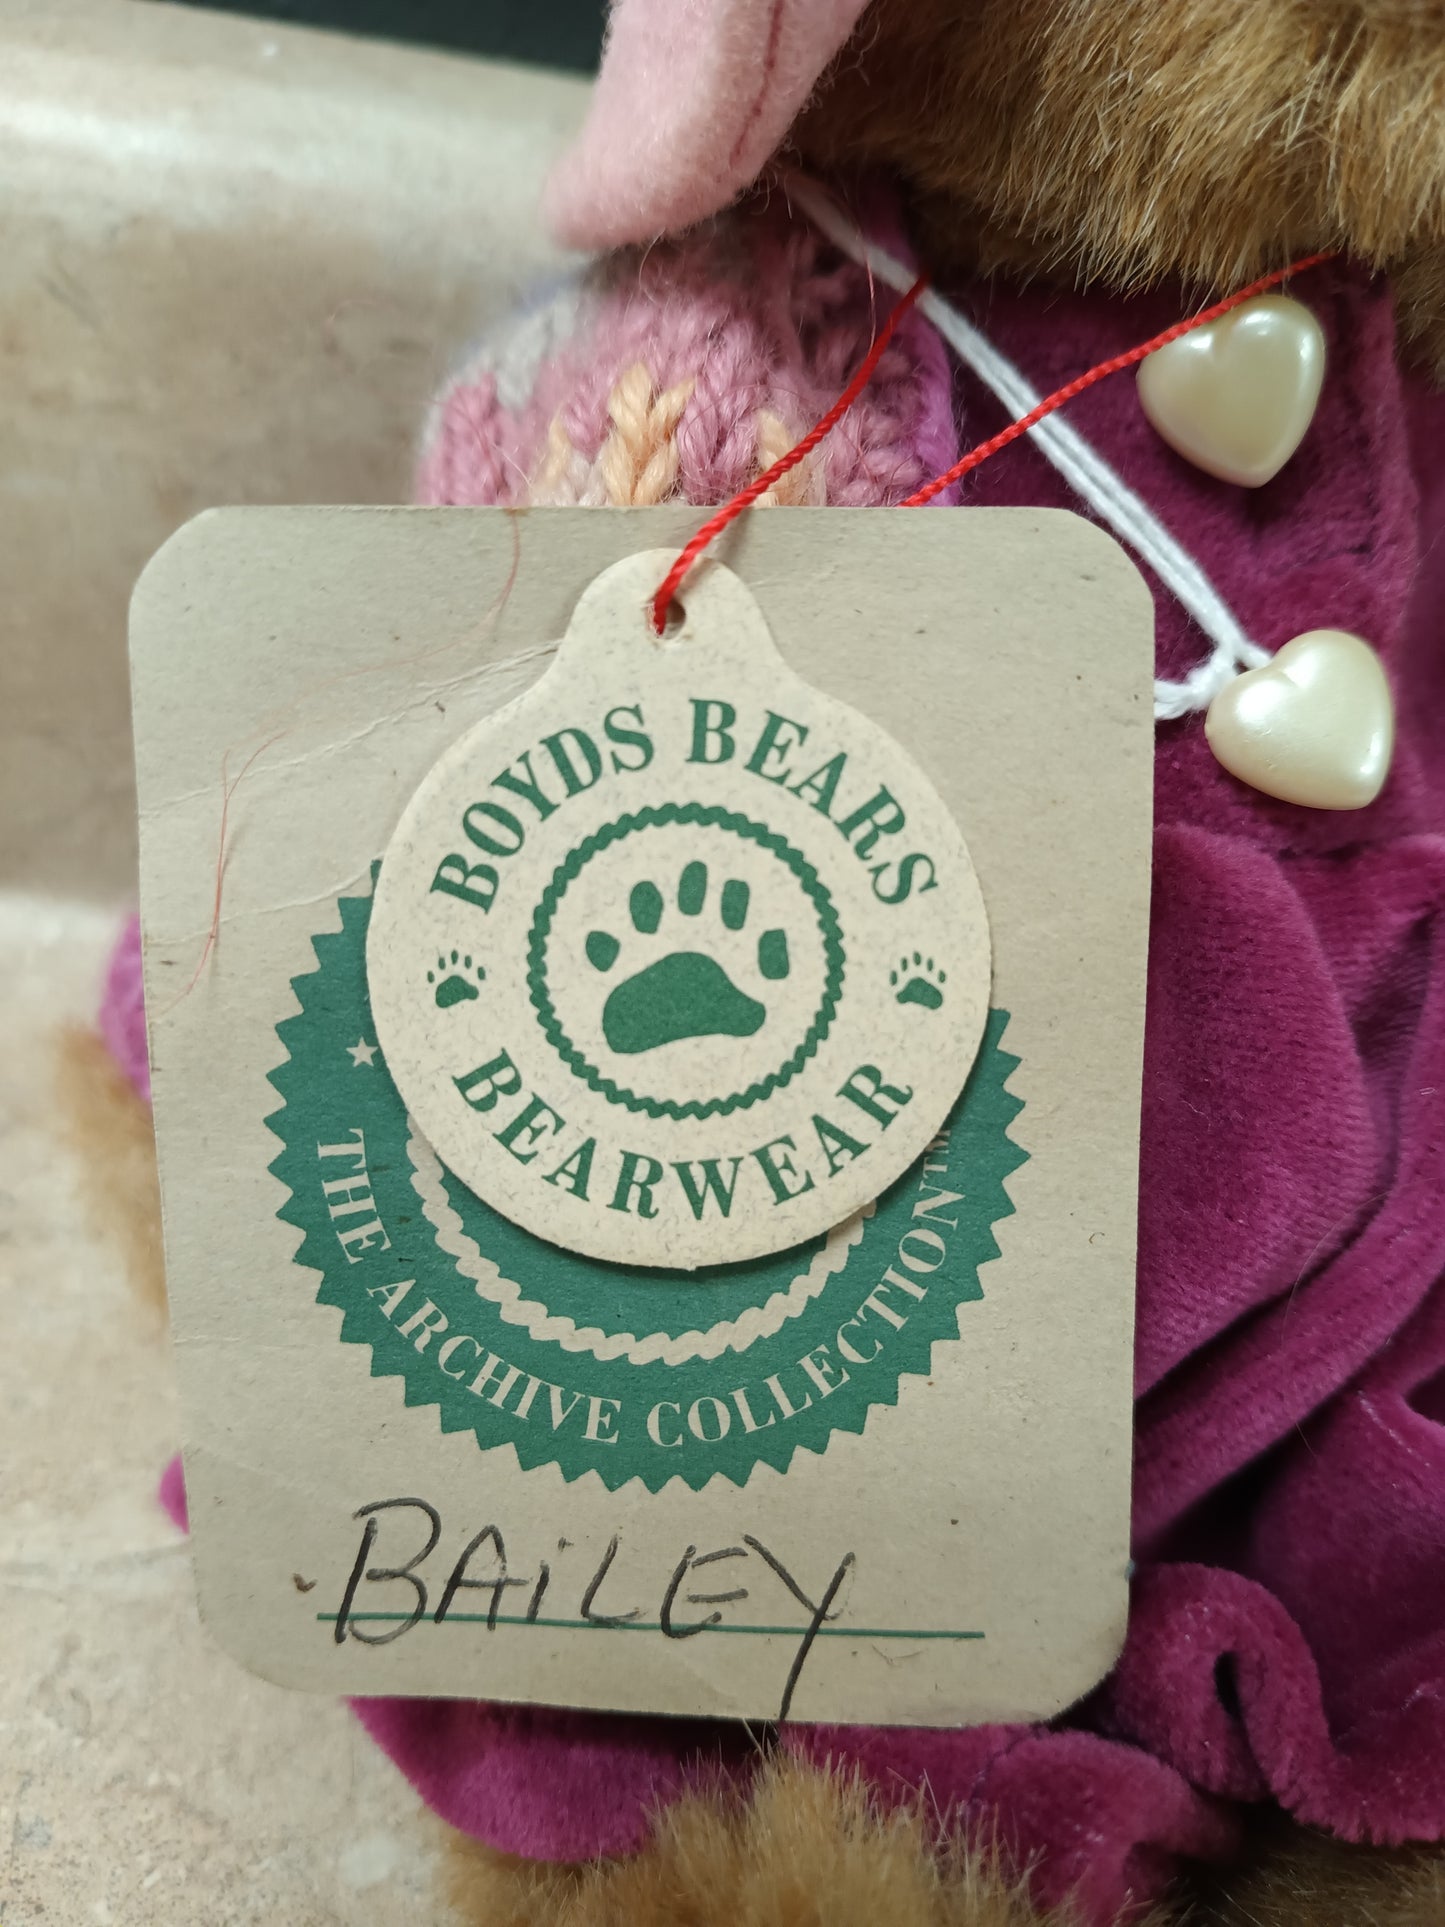 *Boyd's Bears Bailey Teddy Bear Plush